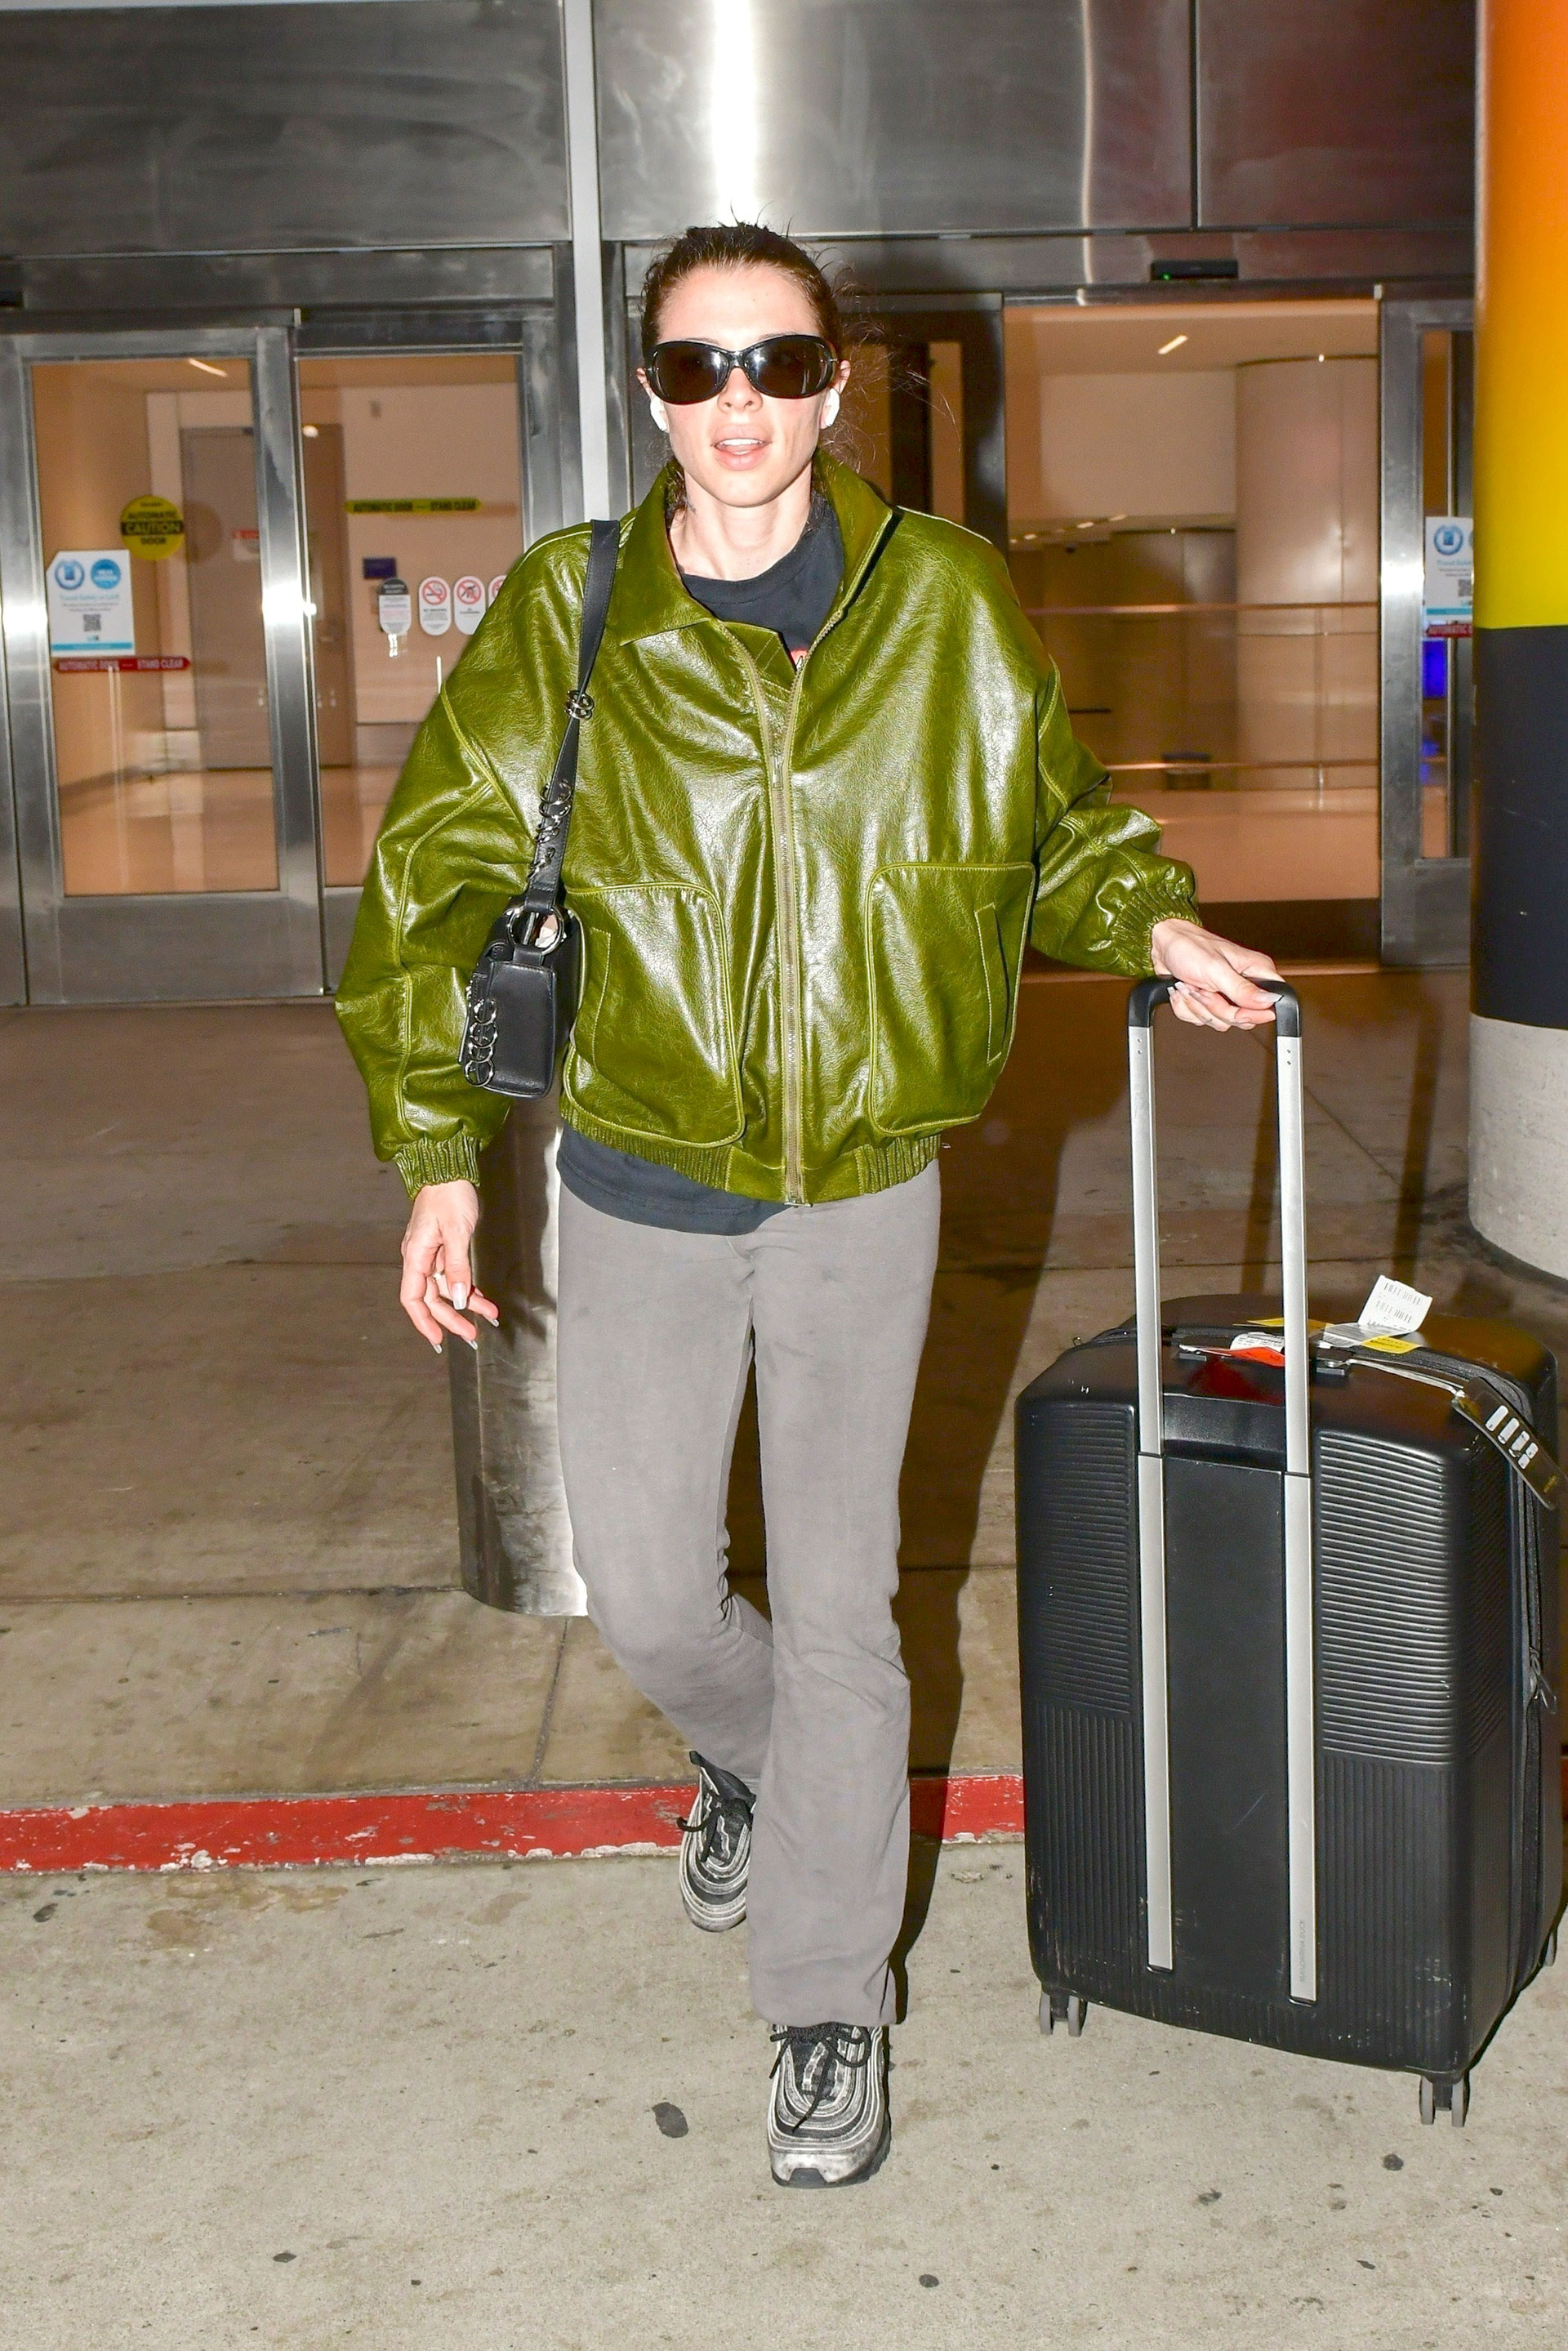 Julia Fox fue fotografiada en el aeropuerto de Los Ángeles, a donde regresó de un viaje de trabajo, y marcó tendencia con su look: una campera verde de cuero, pantalón gris que combinó con sus zapatillas, y cartera de cuero. Además, llevó lentes de sol